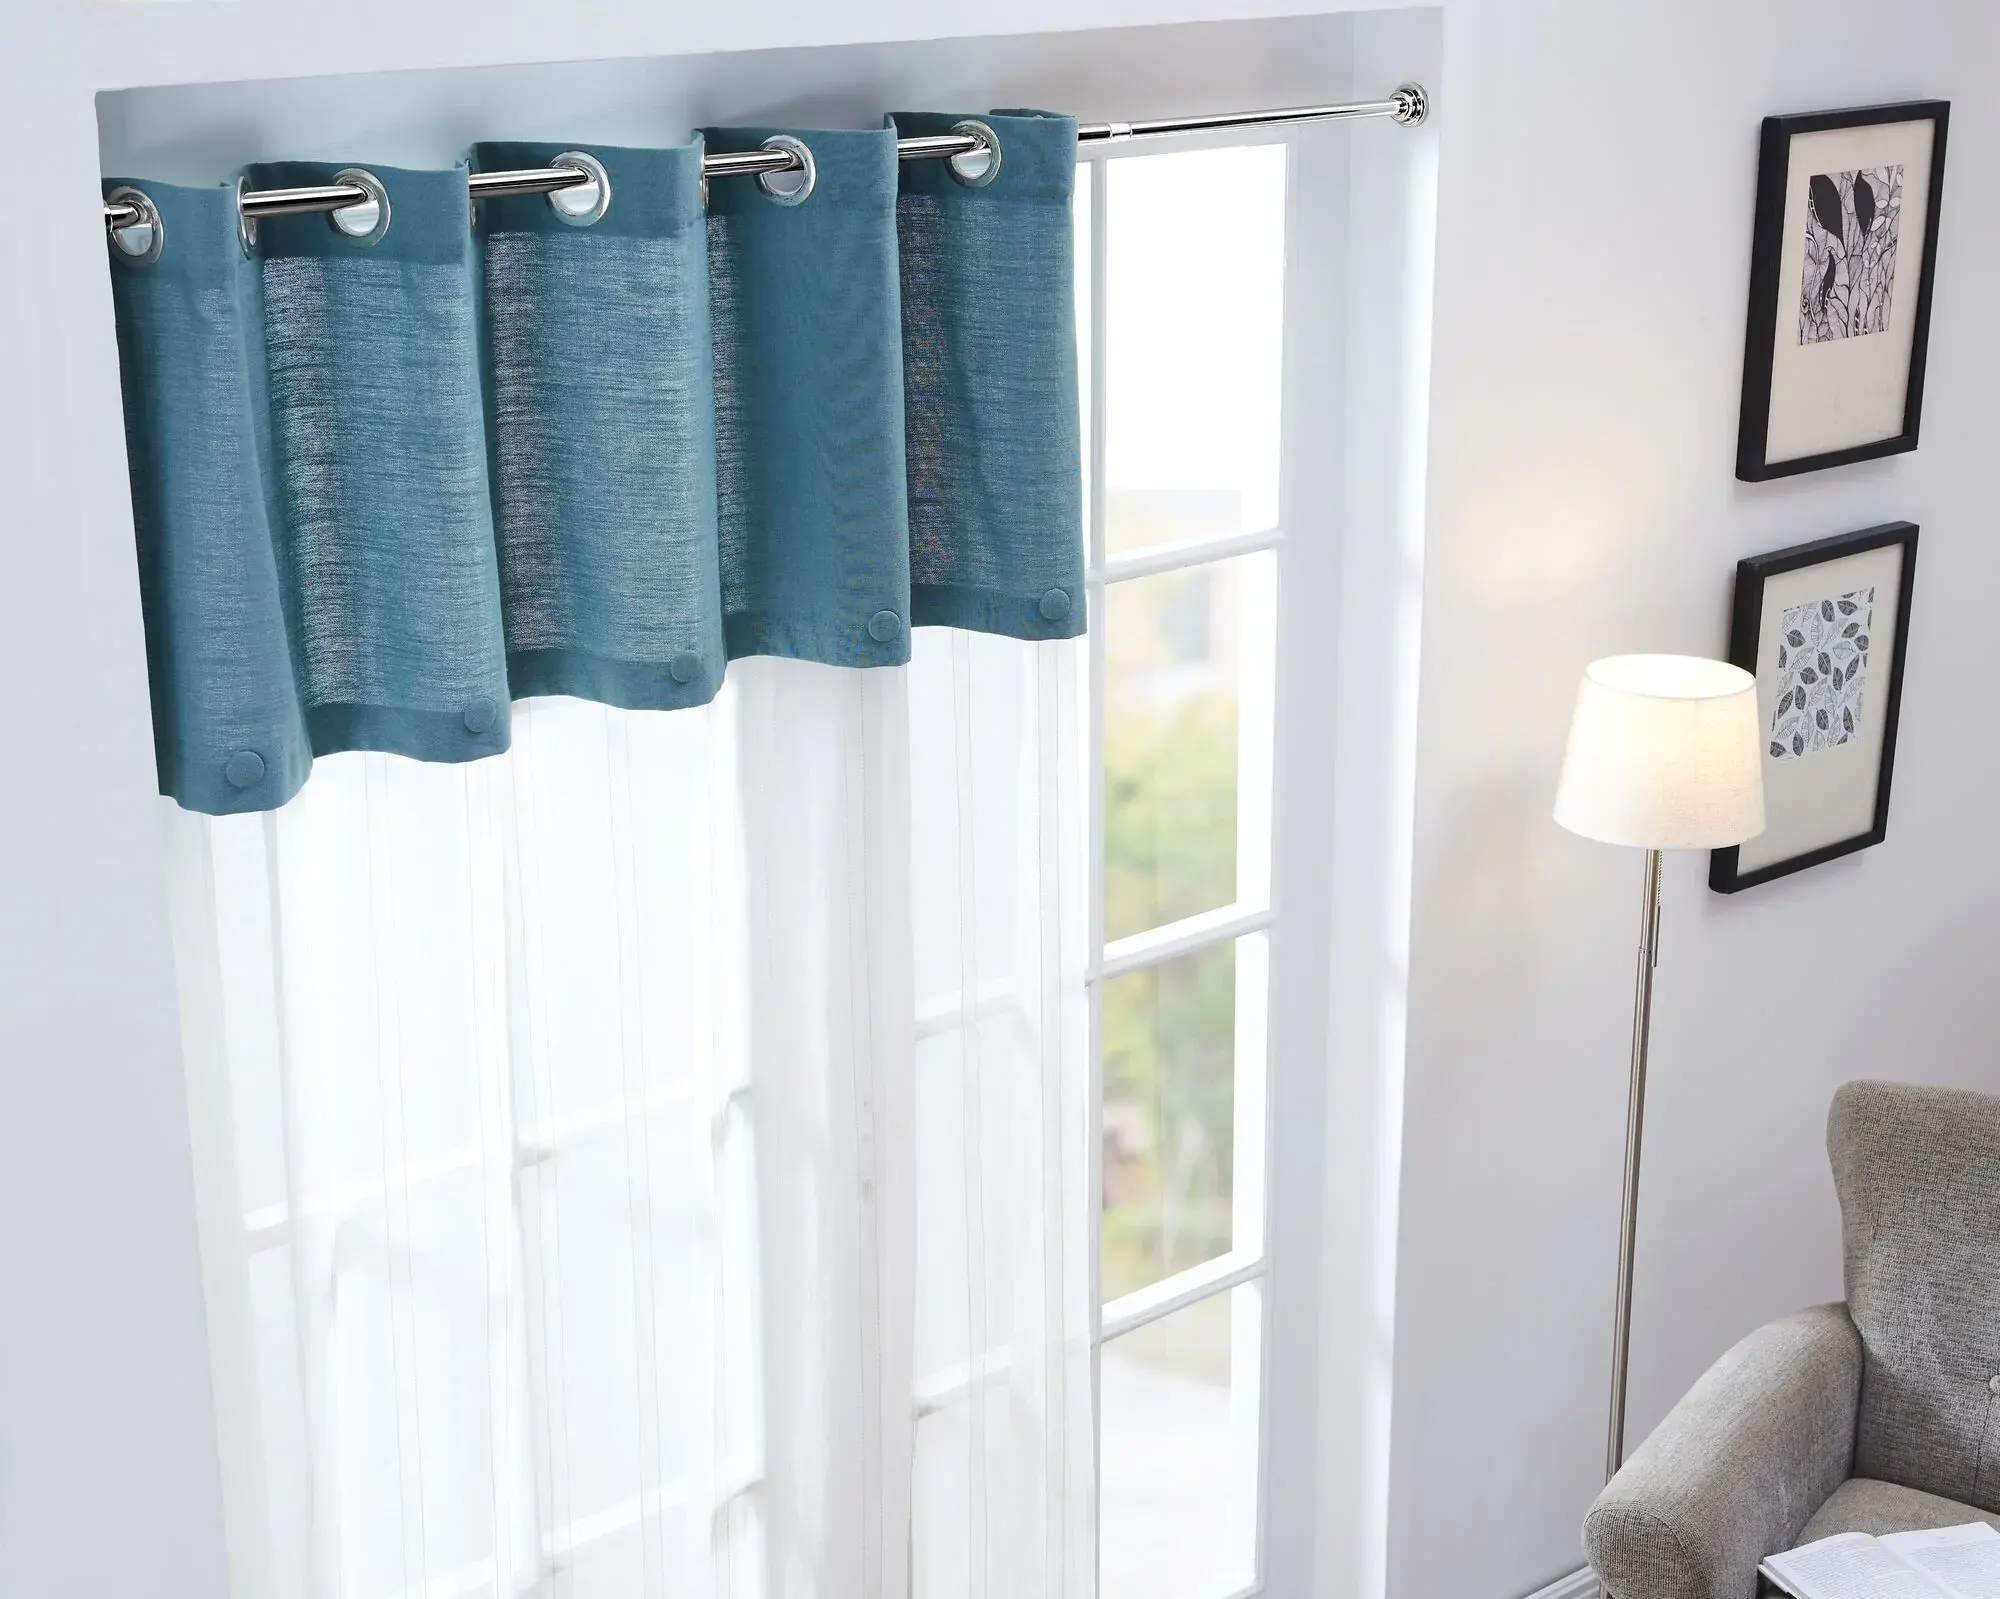 Hiçbir matkap Modern banyo perdesi çubuklar kapı pencere perde direkleri ayarlanabilir uzatılabilir perde çubuk